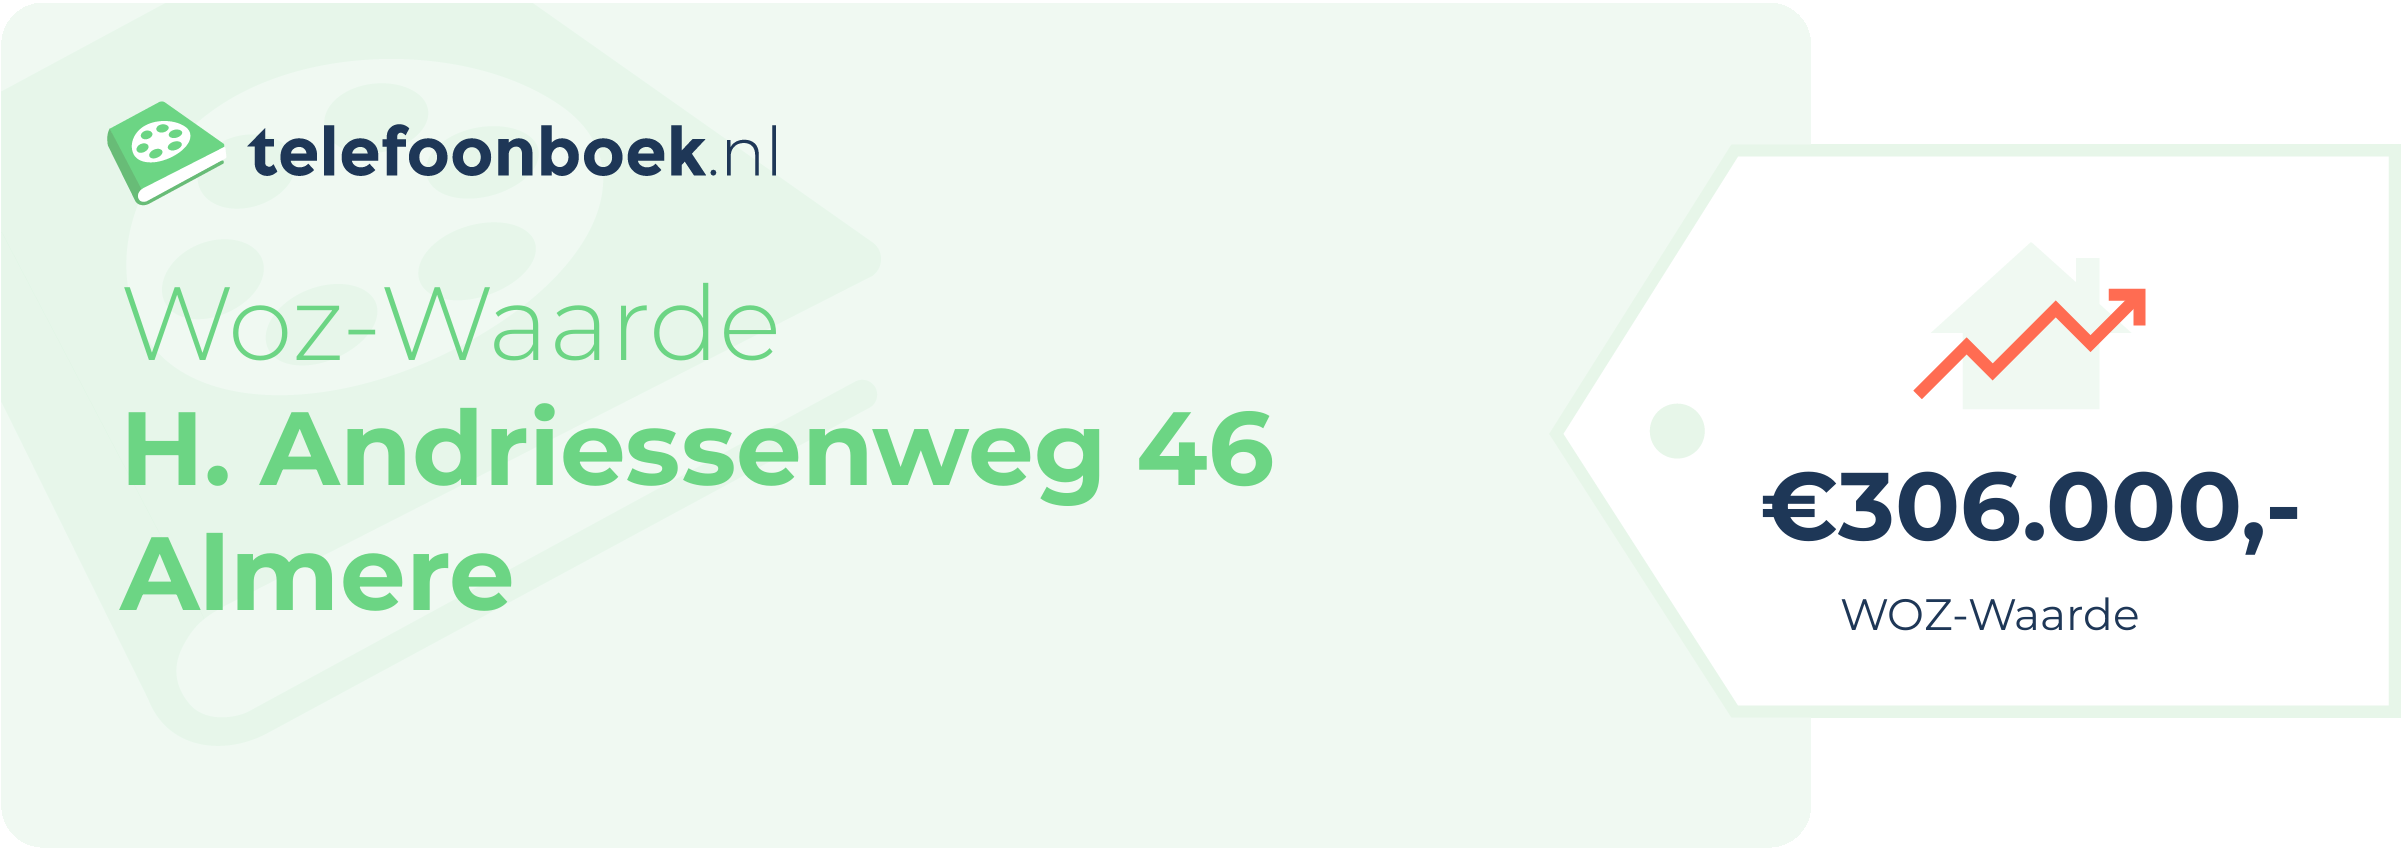 WOZ-waarde H. Andriessenweg 46 Almere